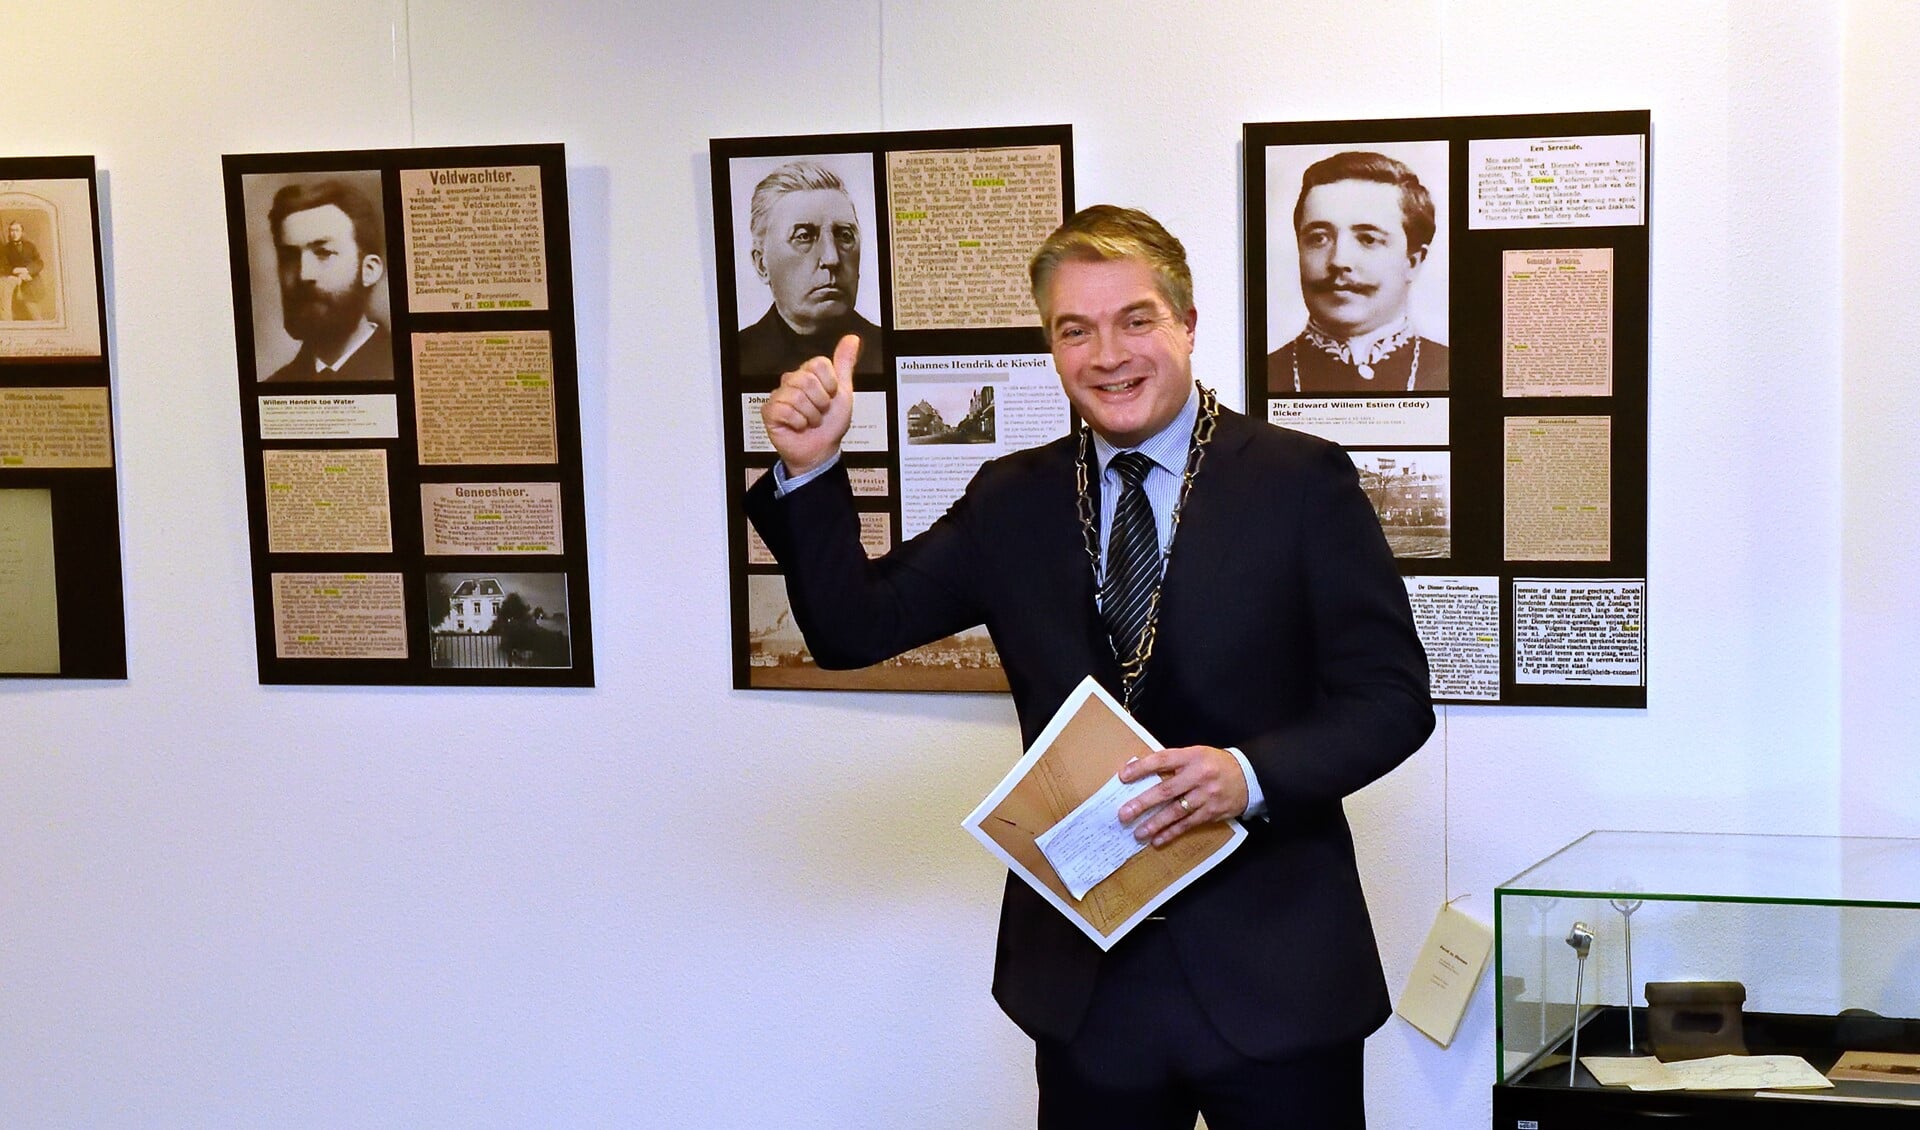 Burgemeester Boog opende de tentoonstelling over zijn voorgangers in Diemen.